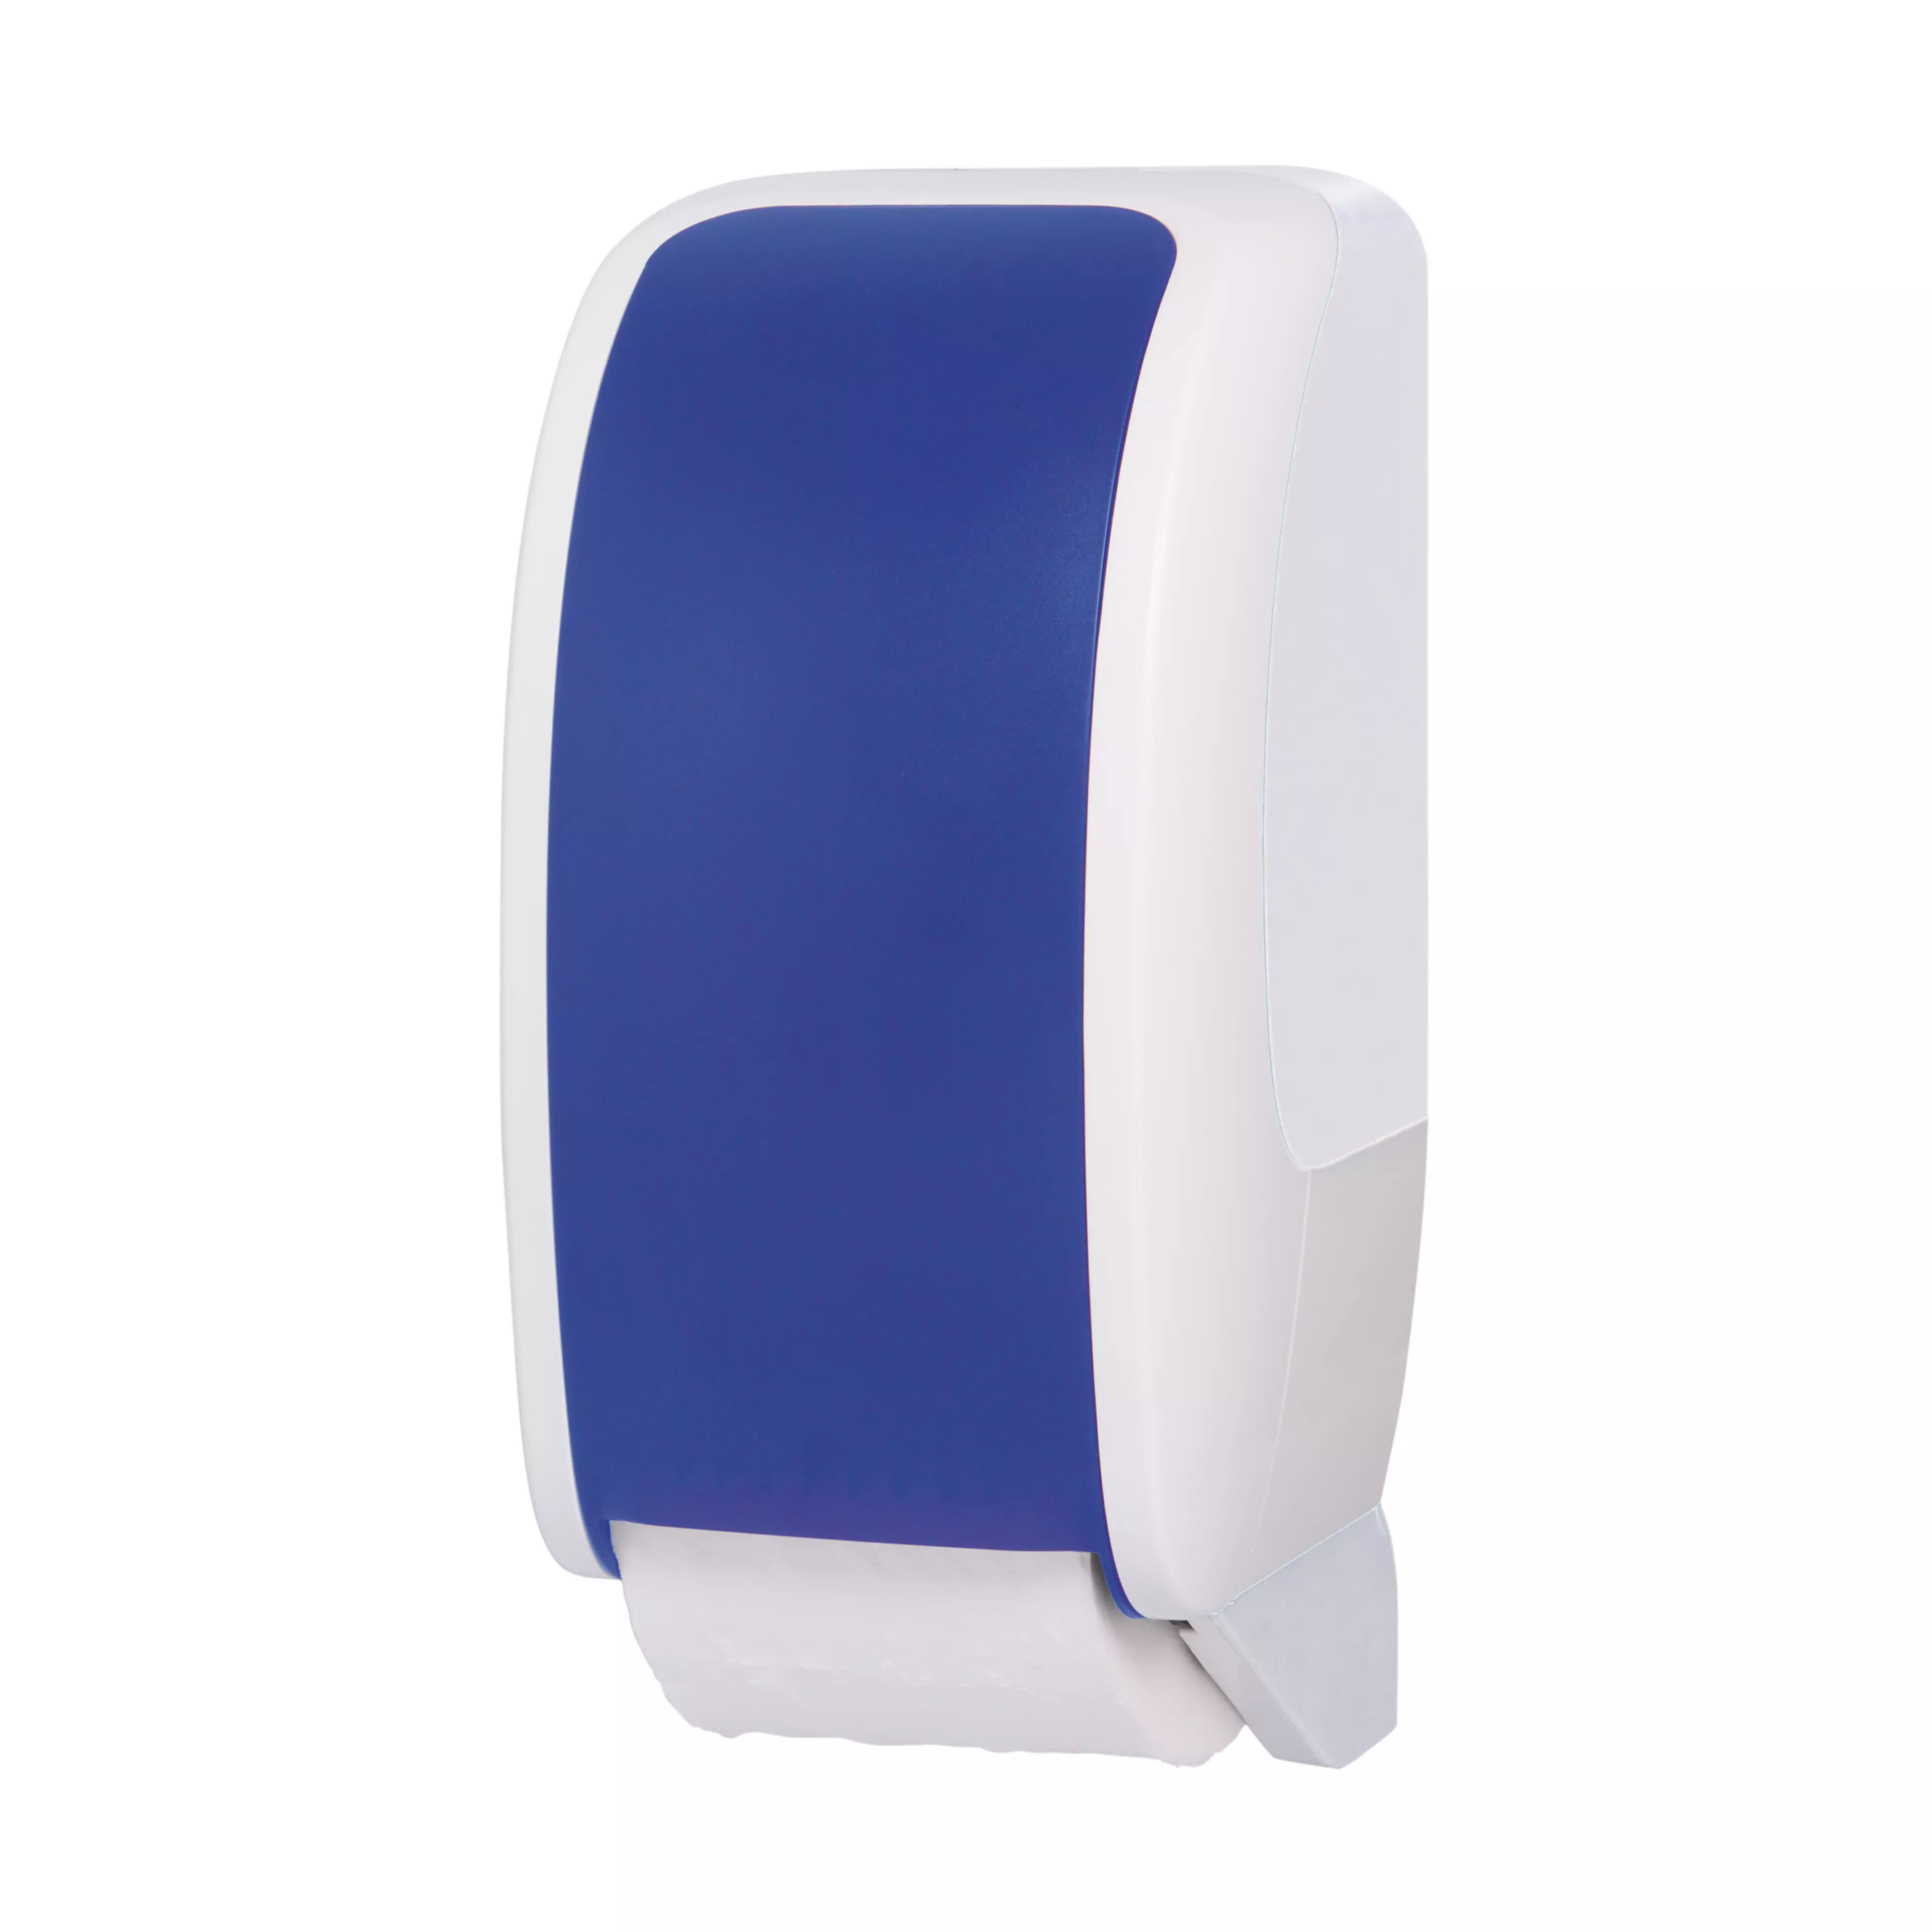 Toilettenpapierspender RATIO - Blau